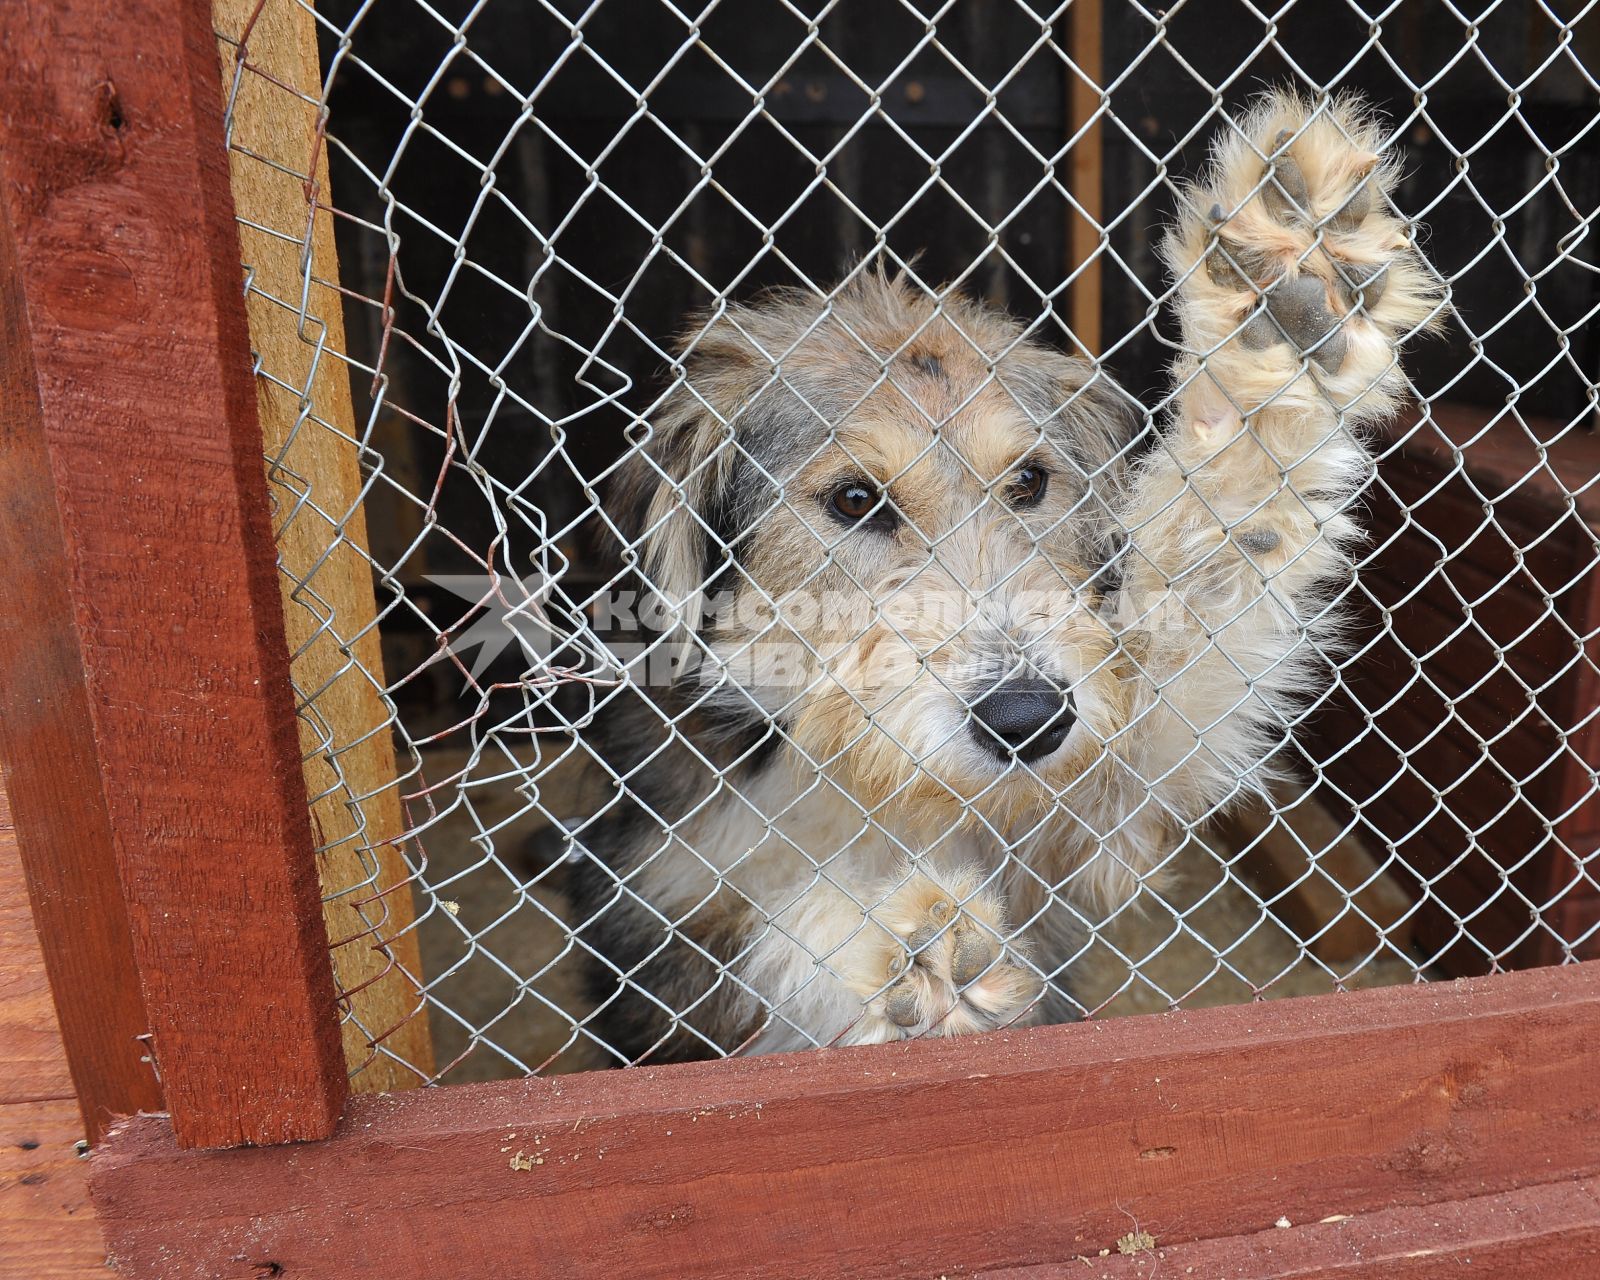 Питомник для бездомных собак и кошек в городе Пушкино. На снимке: бездомная собака в вольере.